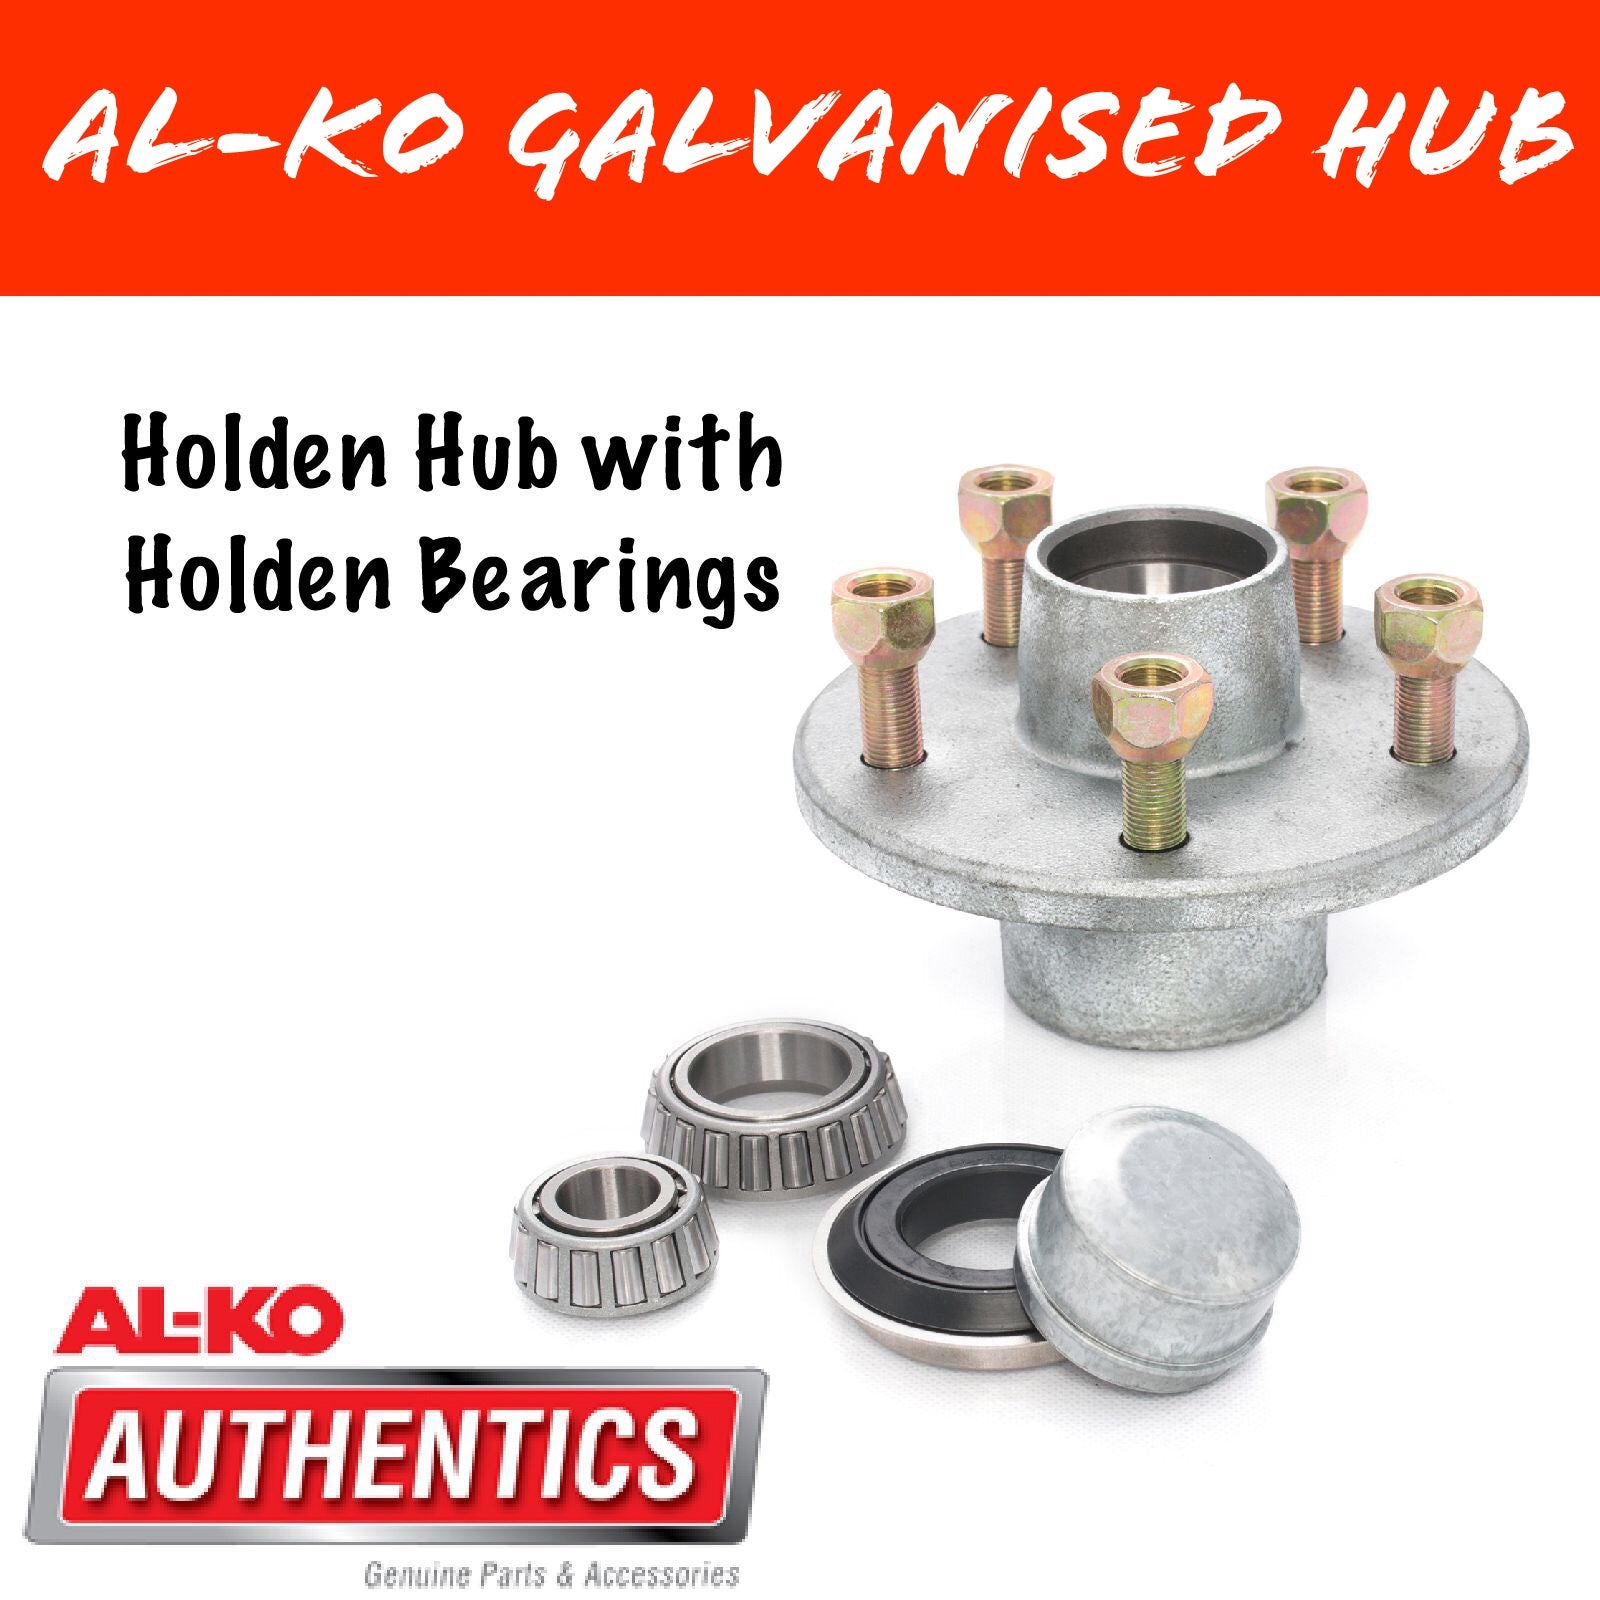 AL-KO Holden Hub with HT Holden Bearings